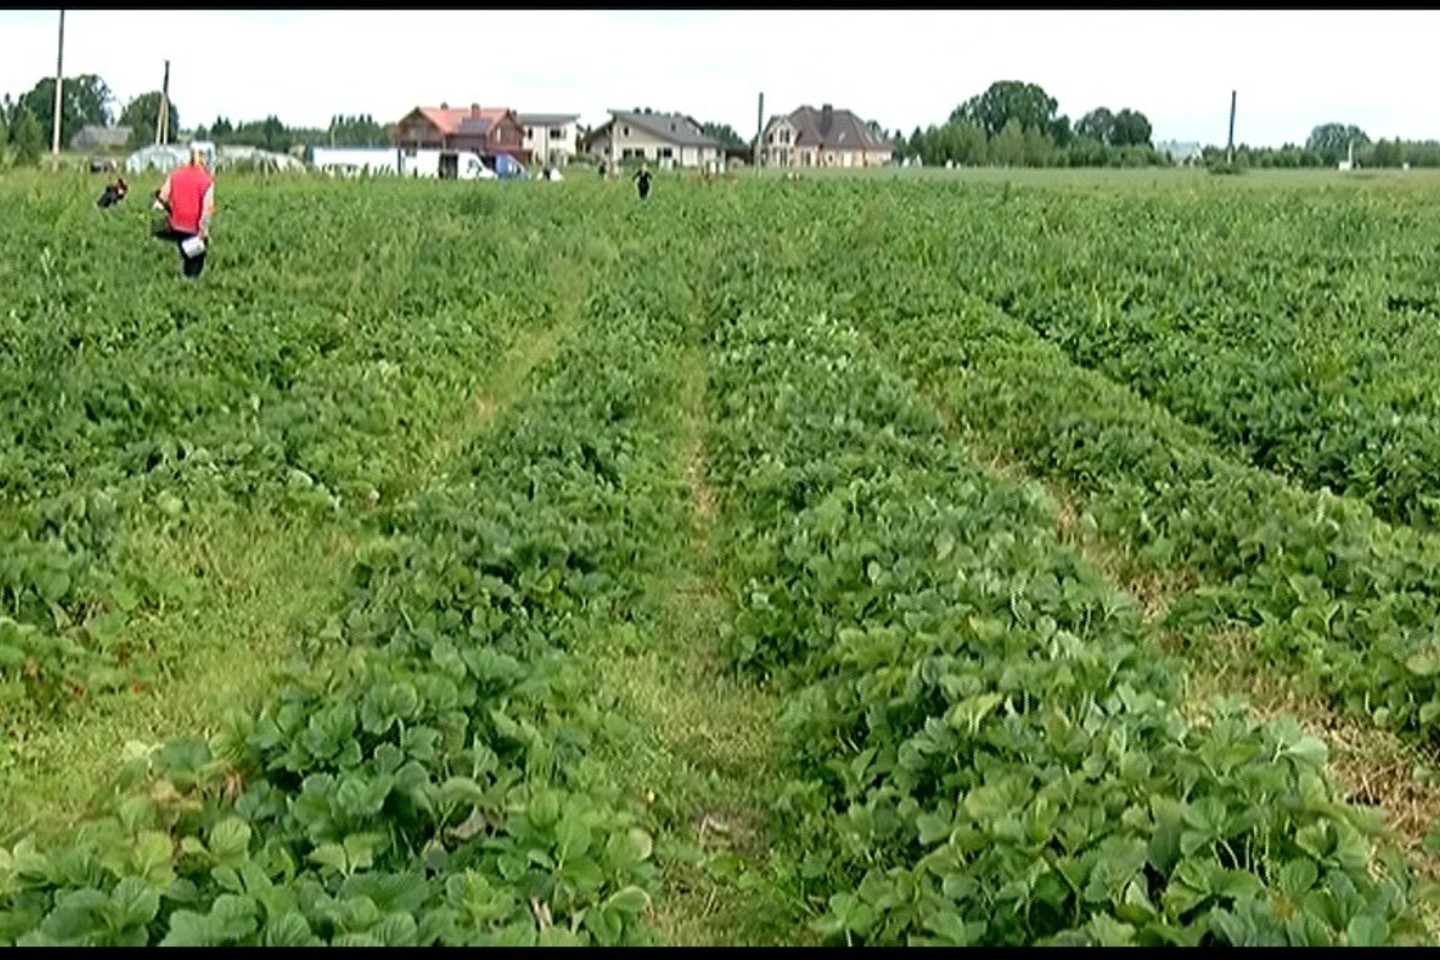  Ūkininkai braškes leidžia skinti tiesiai iš lysvių. Kilogramas prisiskintų uogų kai kuriuose ūkiuose kainuoja vieną eurą.<br> „Lietuvos ryto“ televizijos stopkadras